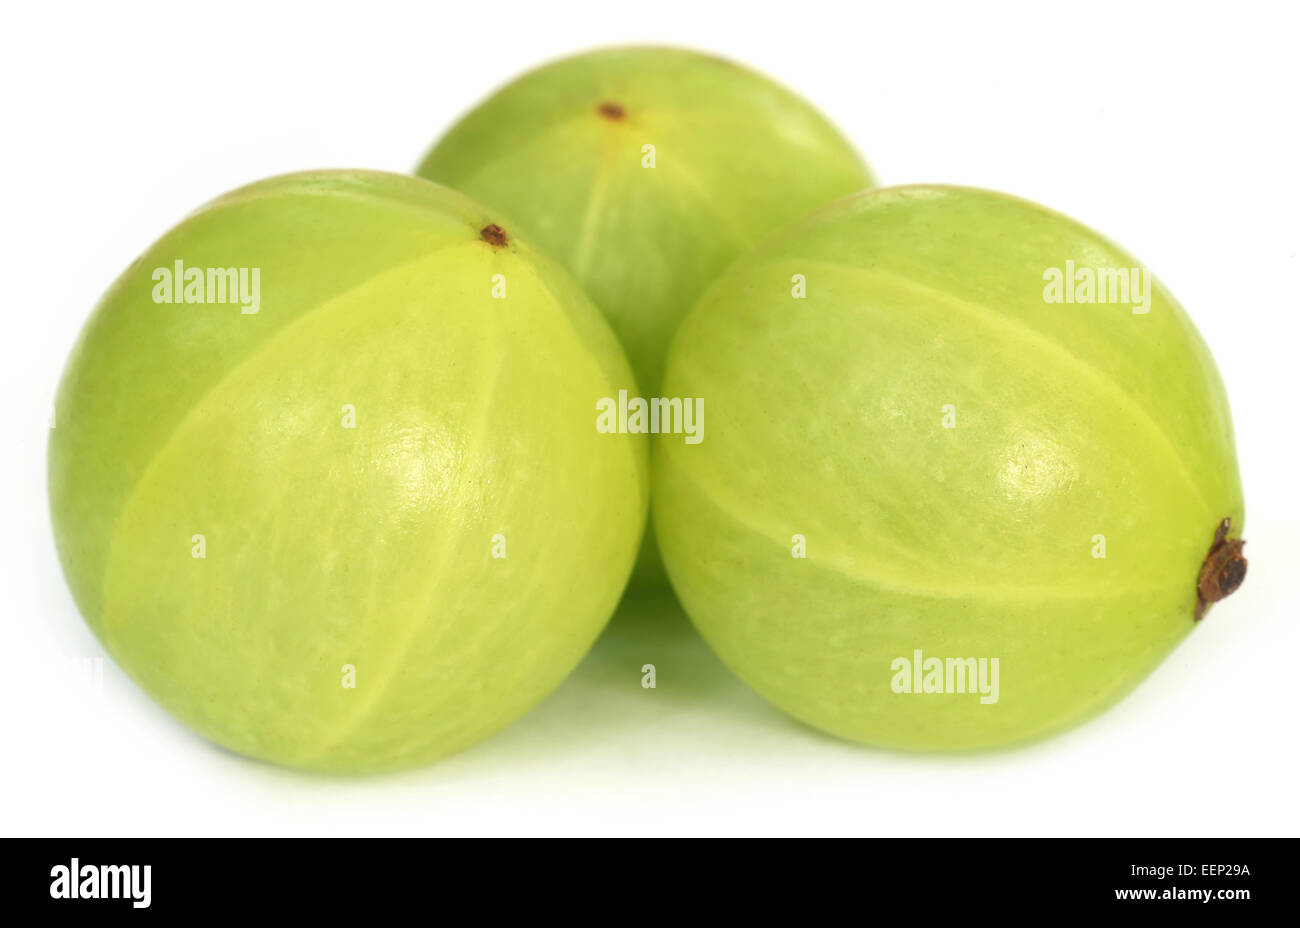 Amla fruits over white background Stock Photo